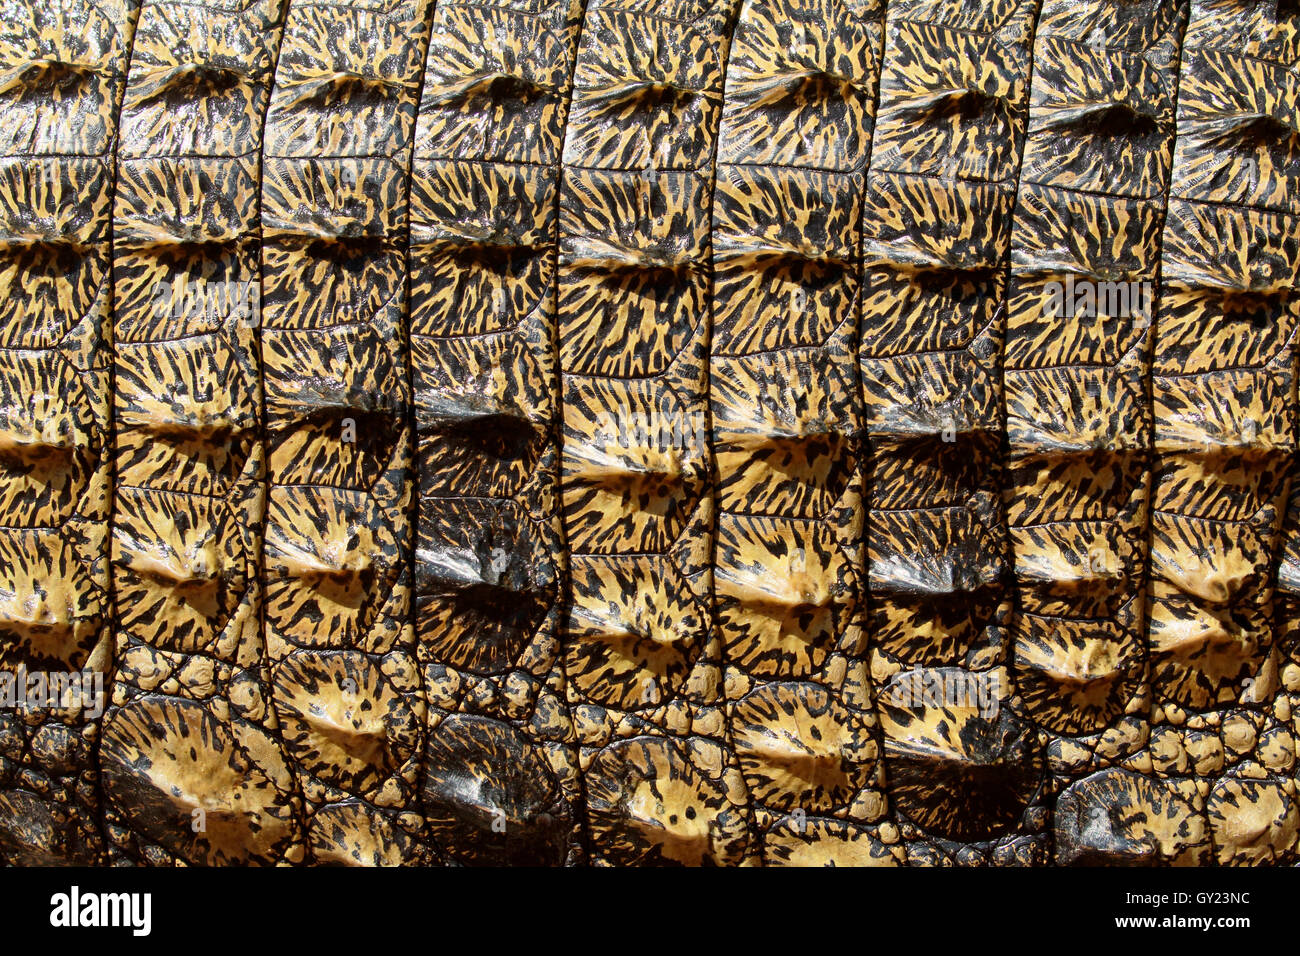 El cocodrilo del Nilo, Crocodylus niloticus, cerca de la piel, Sudáfrica, agosto de 2016 Foto de stock